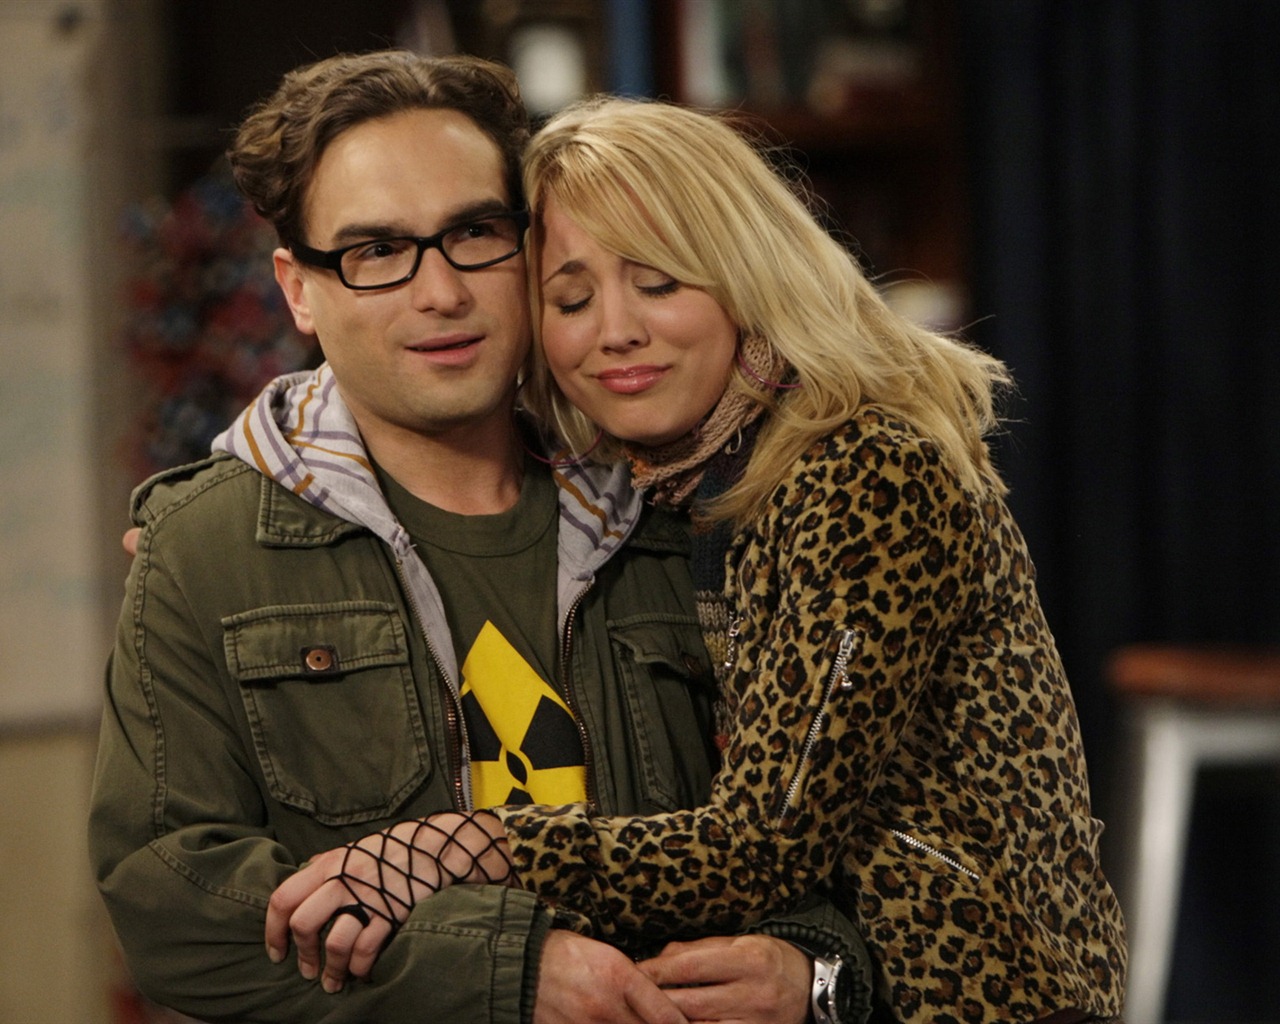 The Big Bang Theory 生活大爆炸 电视剧高清壁纸5 - 1280x1024